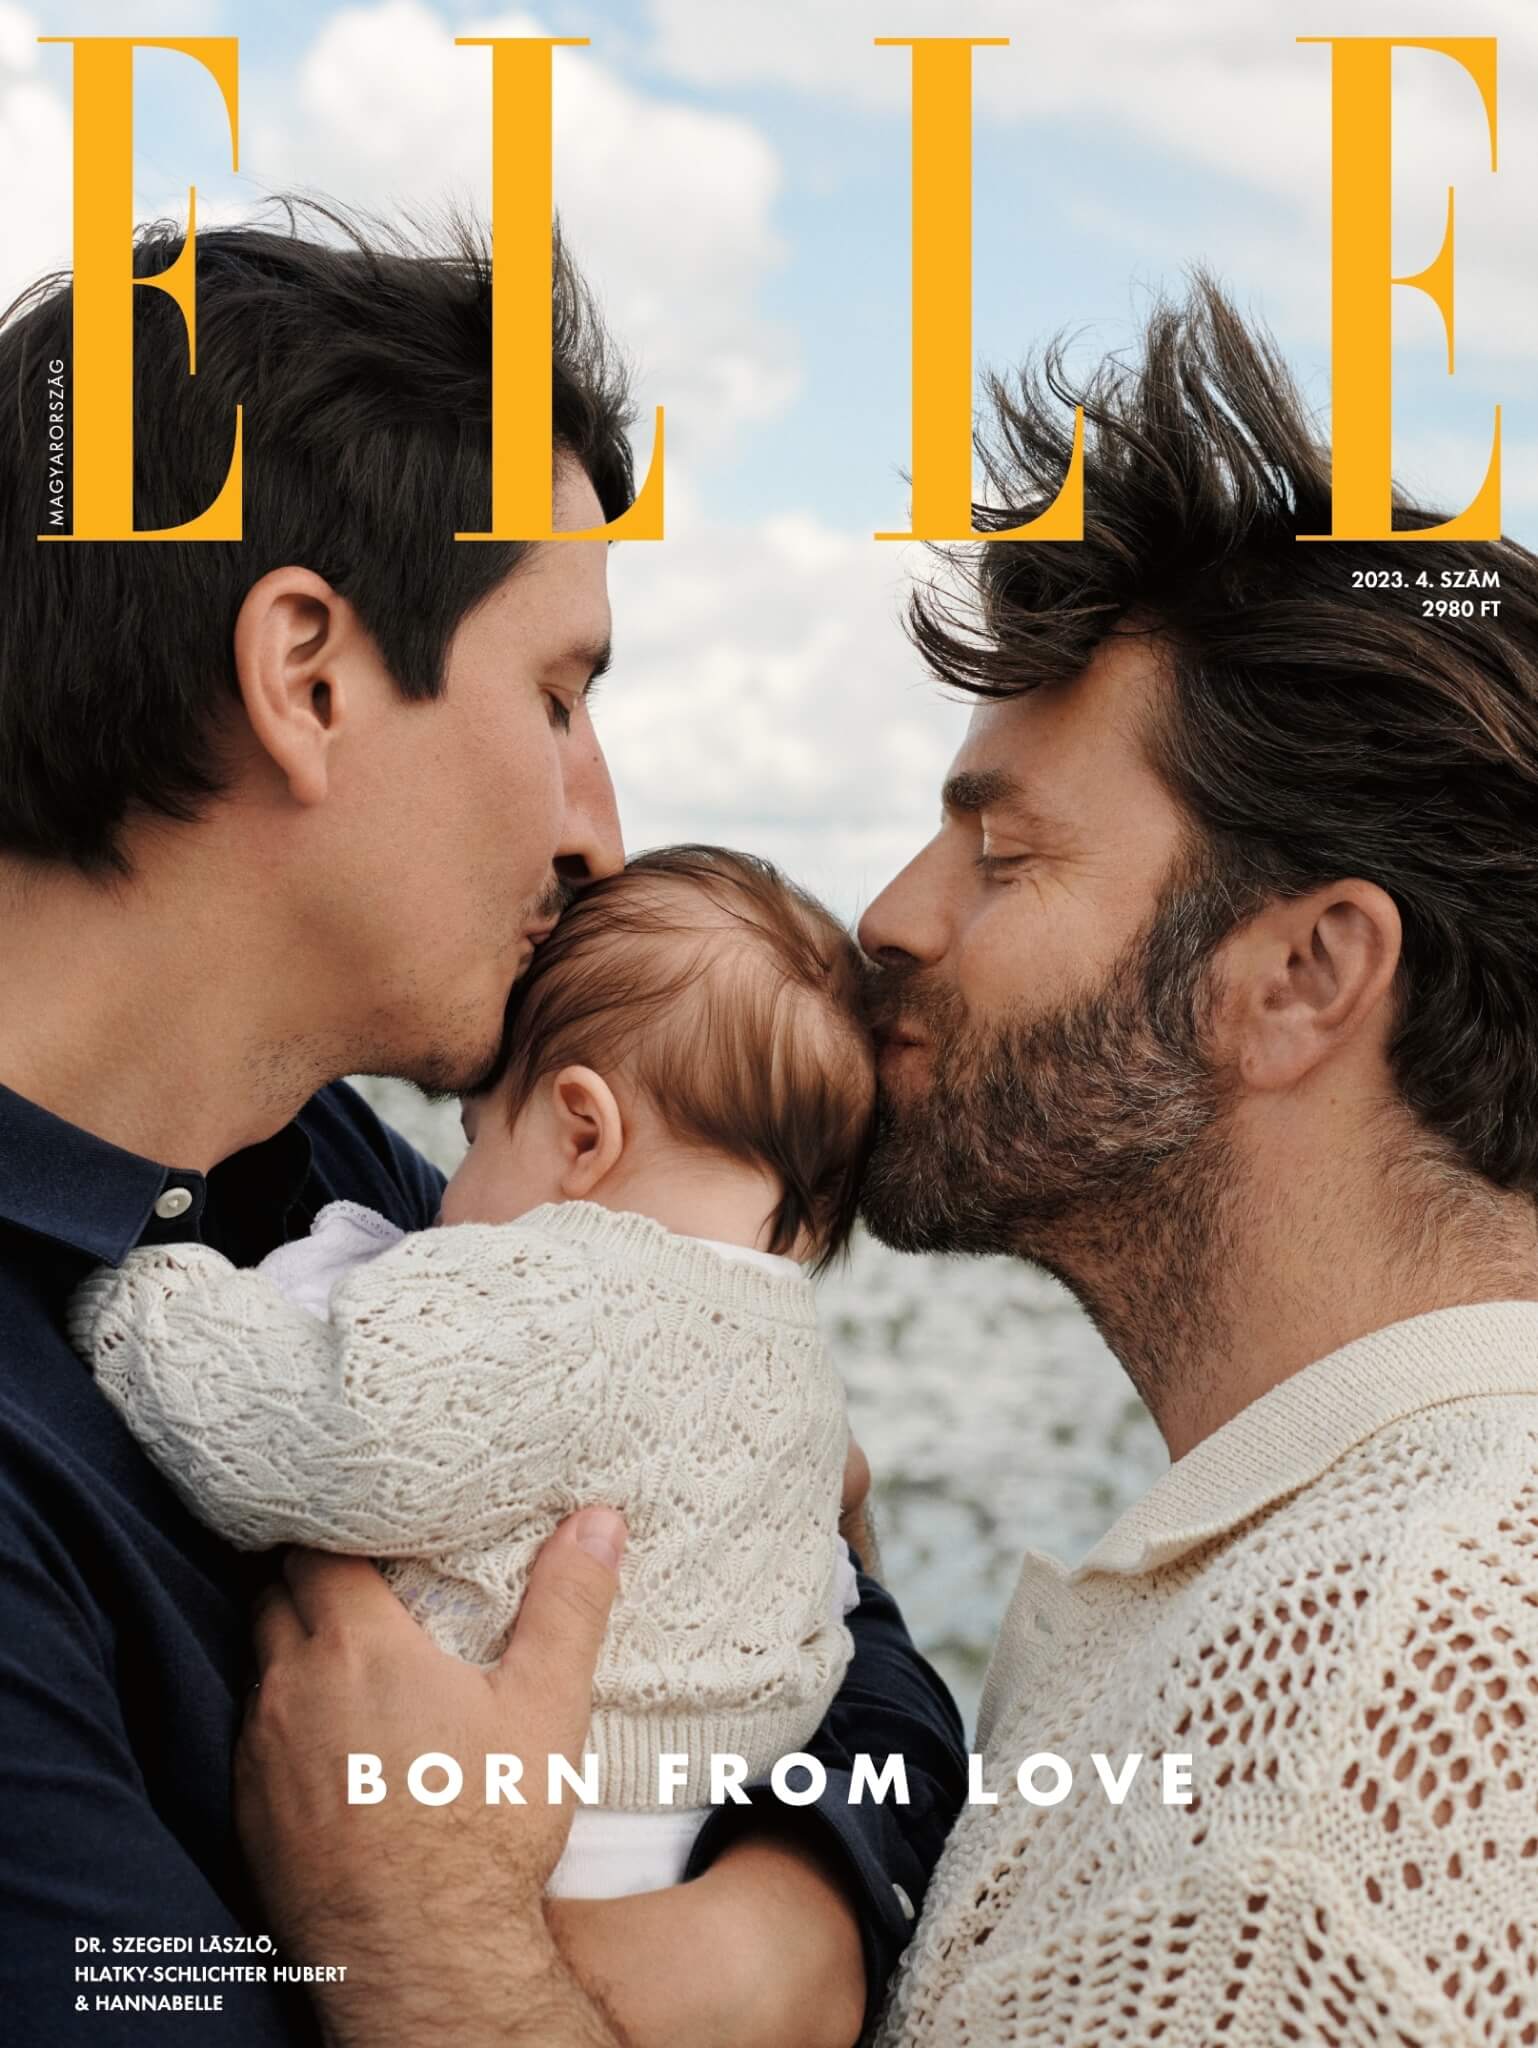 Elle Ungheria sfida Viktor Orban mettendo due papà gay con figlia in copertina - Elle Ungheria sfida Viktor Orban mettendo due papa gay con figlia in copertina - Gay.it